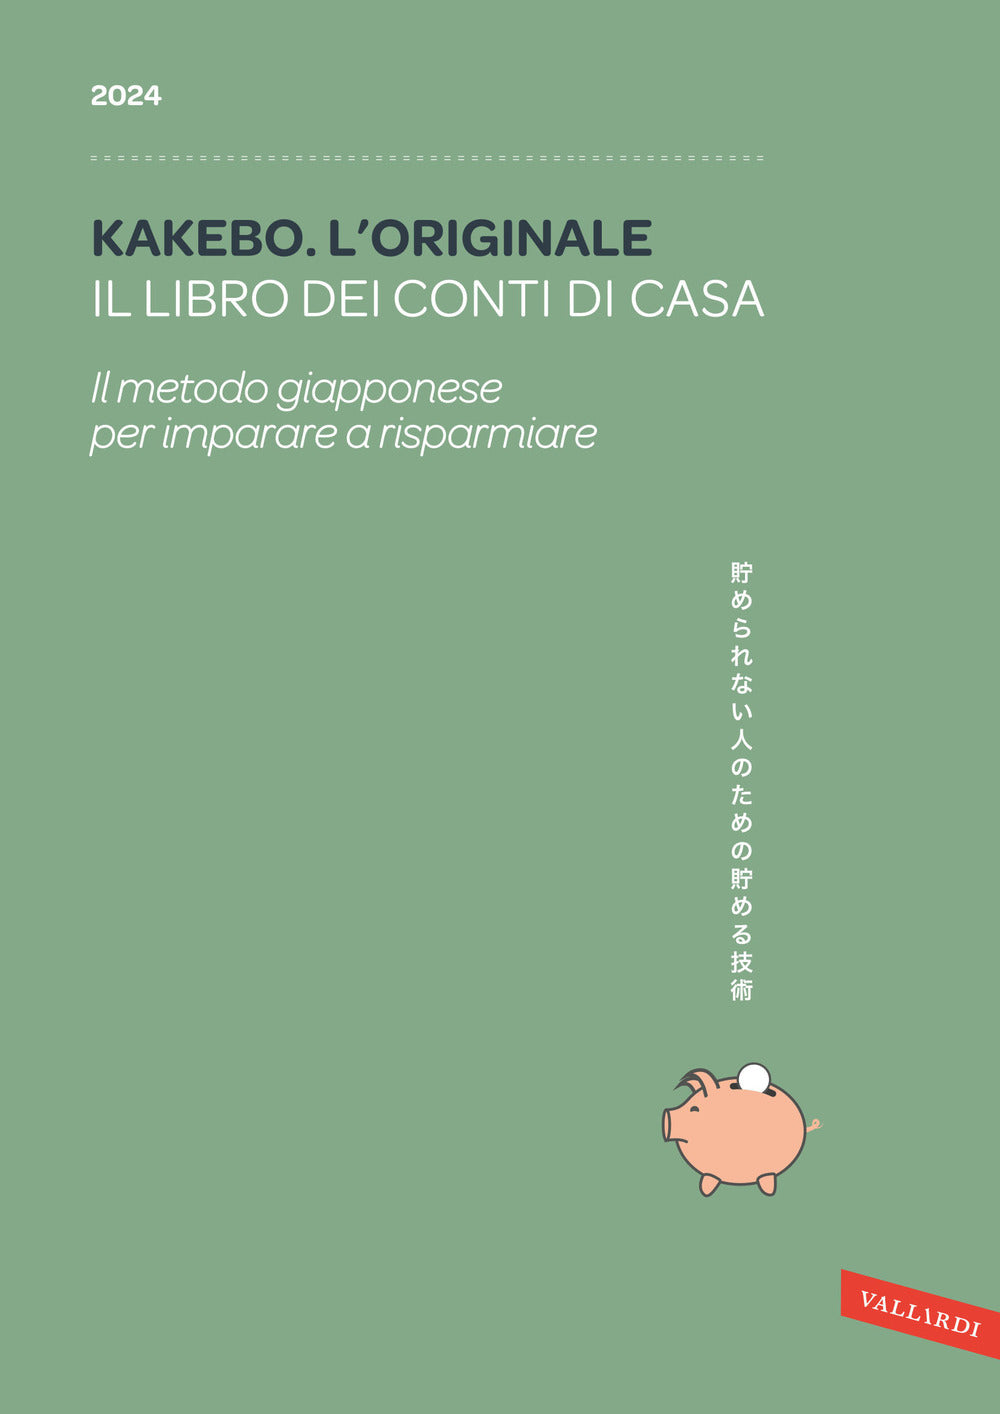 Kakebo 2024 Italiano - Formato Grande A4: Gestisci e Risparmia Soldi Senza  Stress e più Facilmente con l’Infallibile Metodo Giapponese | Agenda dei